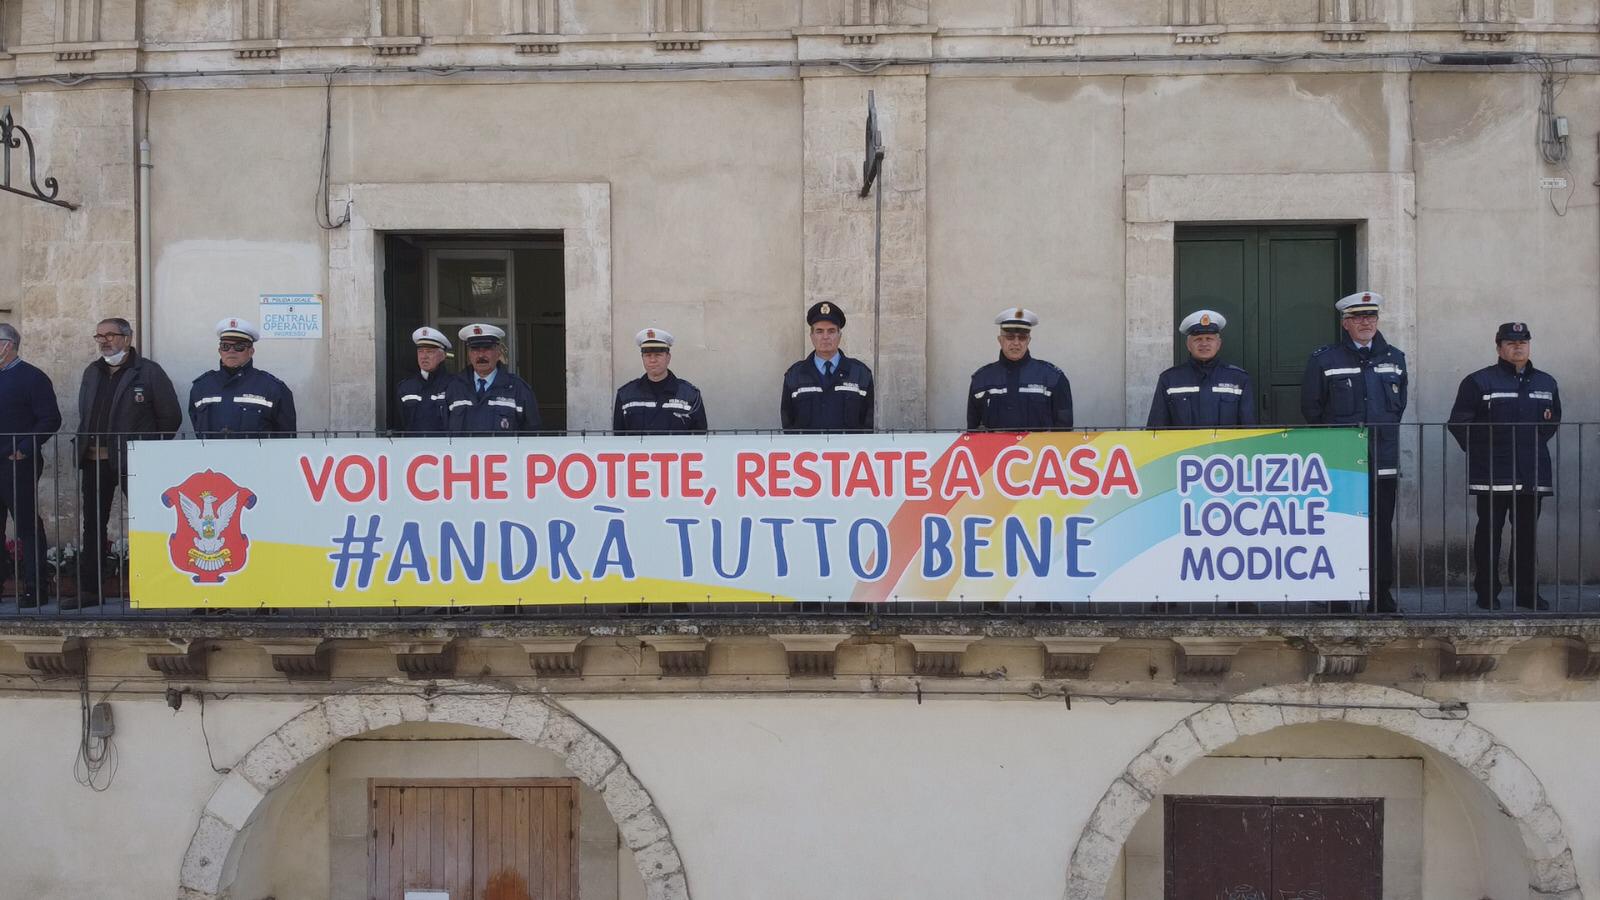  “Halleluja”: la polizia di Modica canta per i cittadini. E il video spopola